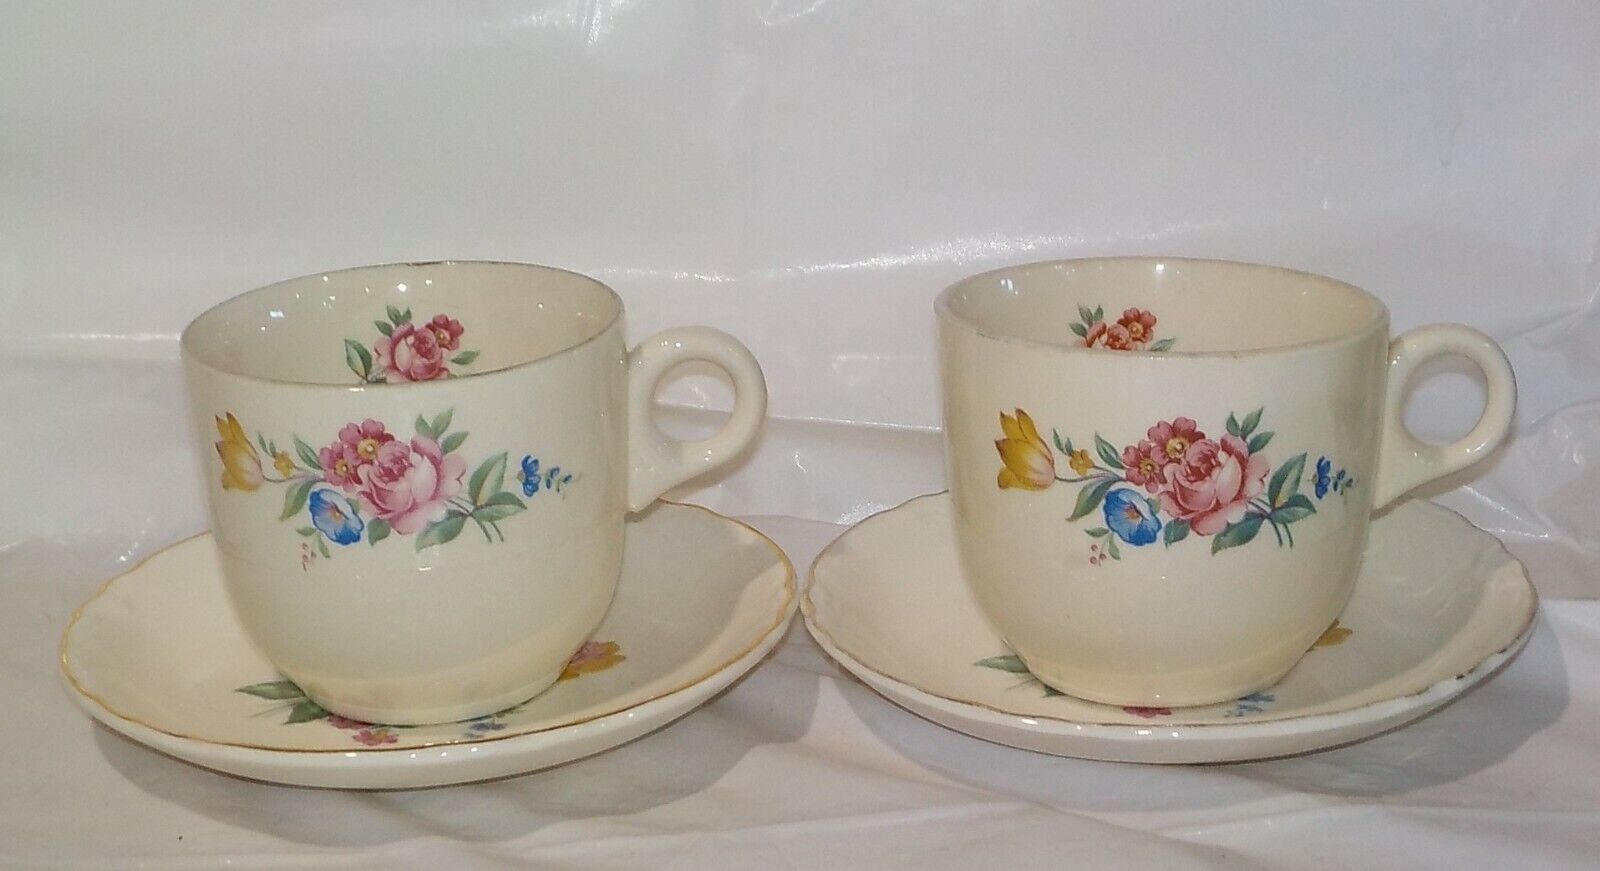 Hazel Scio Coffee Tea Cups Mugs Pattern Inside Set of 2